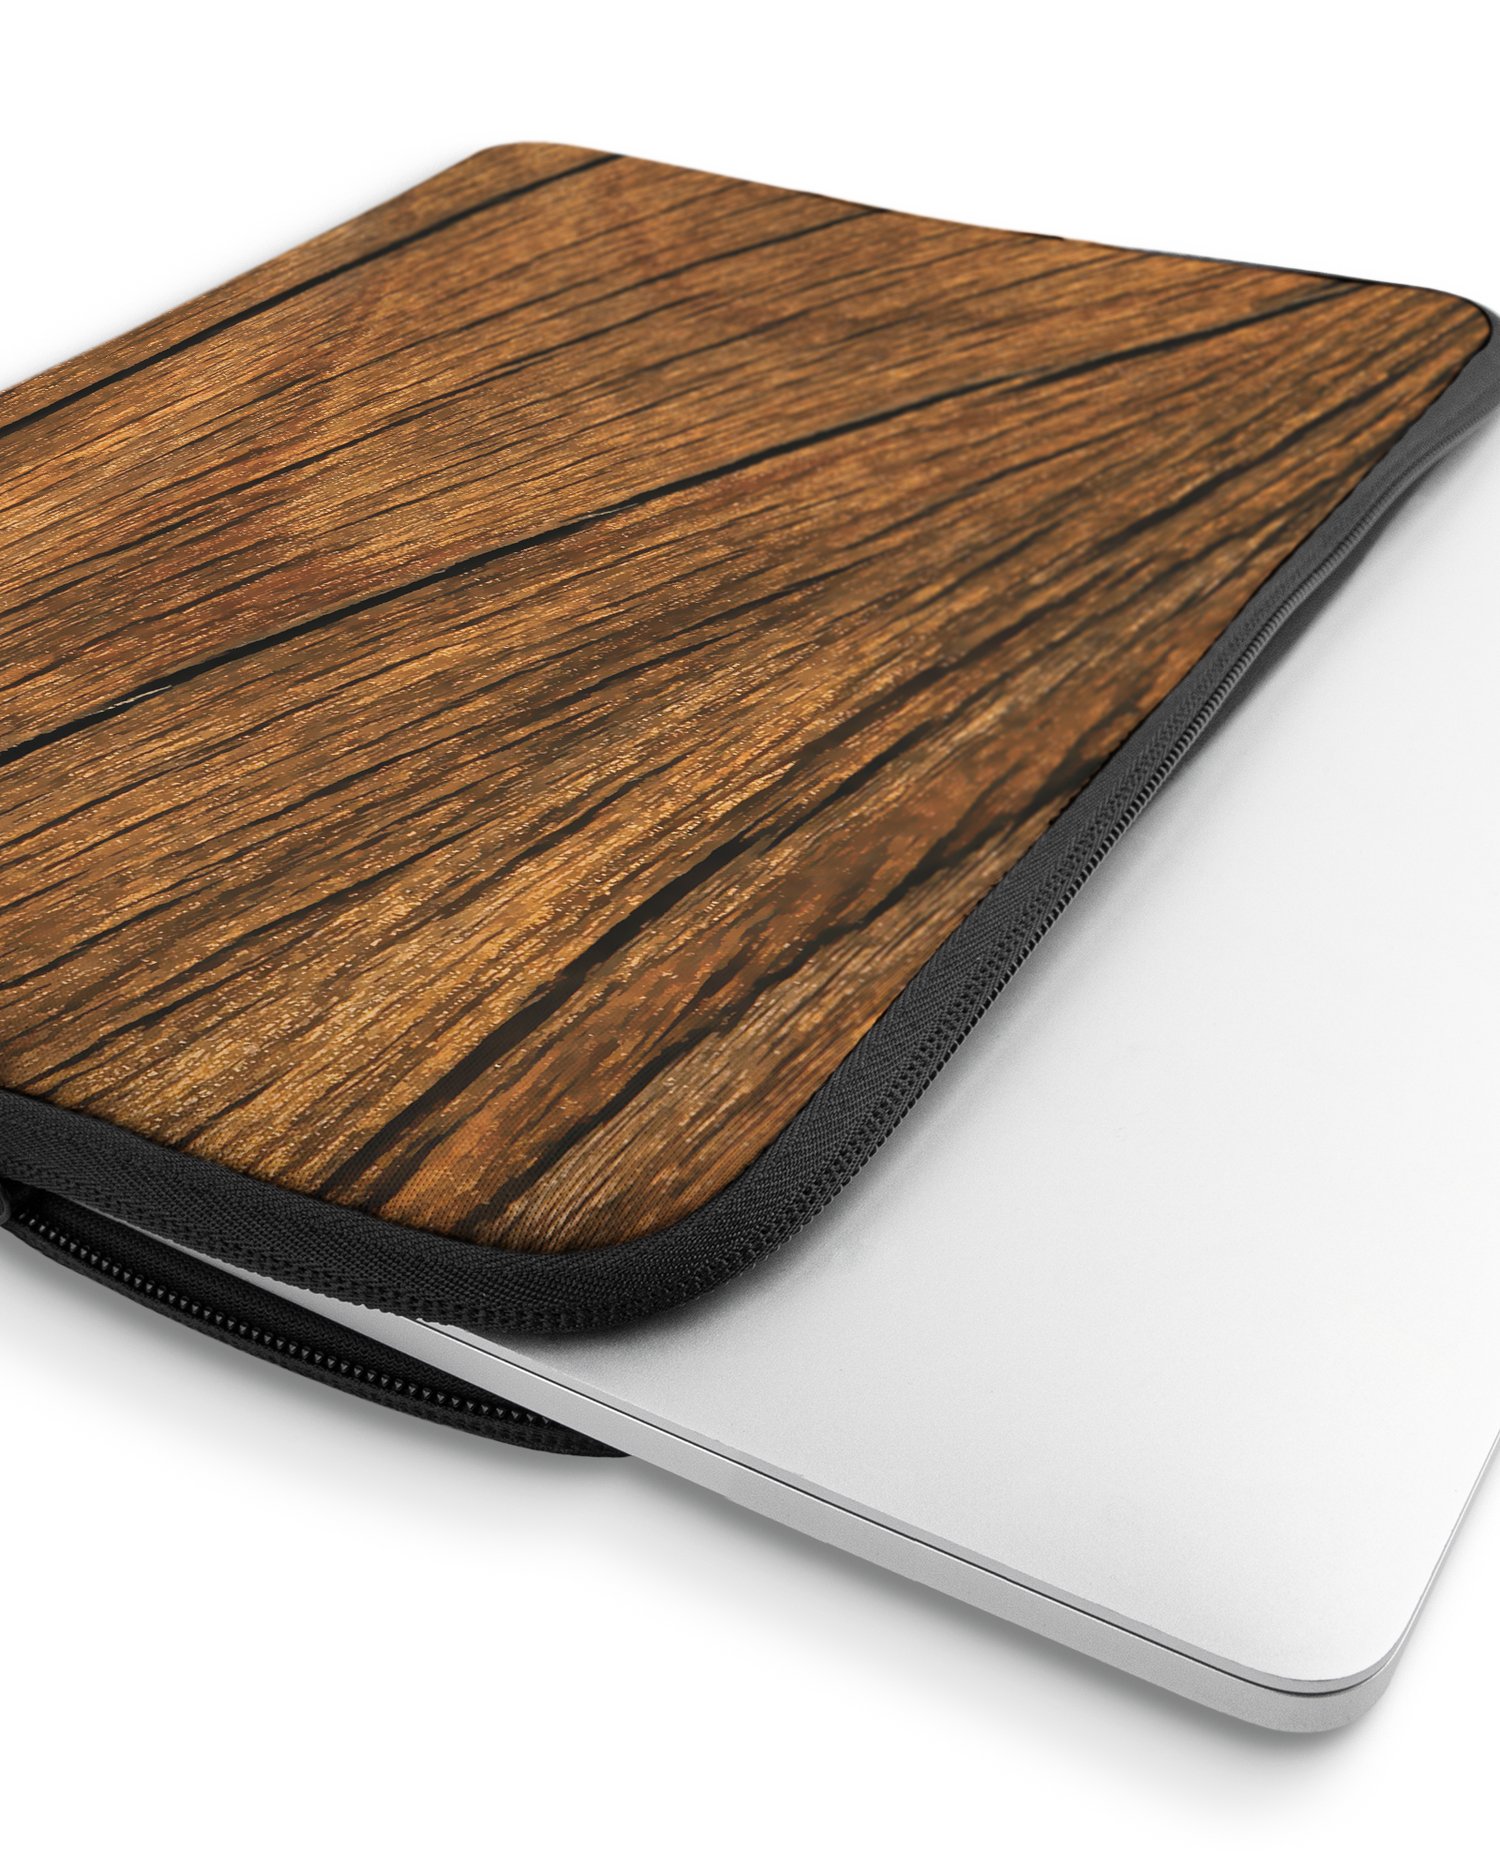 Wood Laptophülle 16 Zoll mit Gerät im Inneren